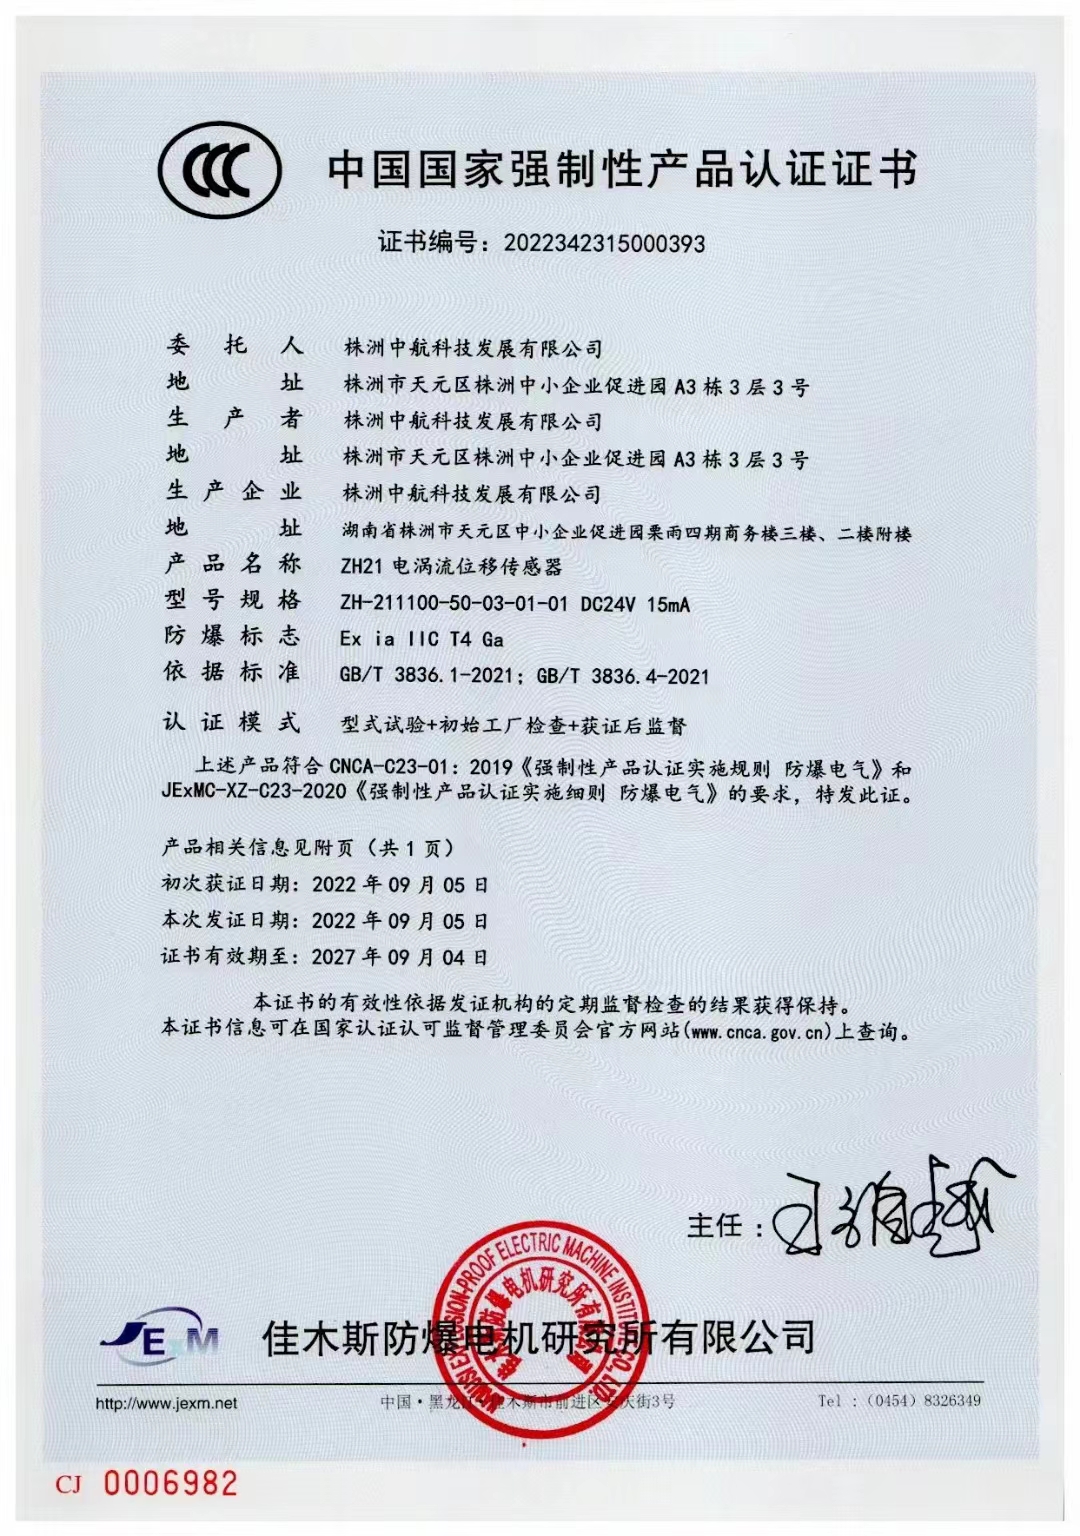 我司順利通過國家強制性產品CCC認證，獲得了《中國國家強制性產品認證證書》